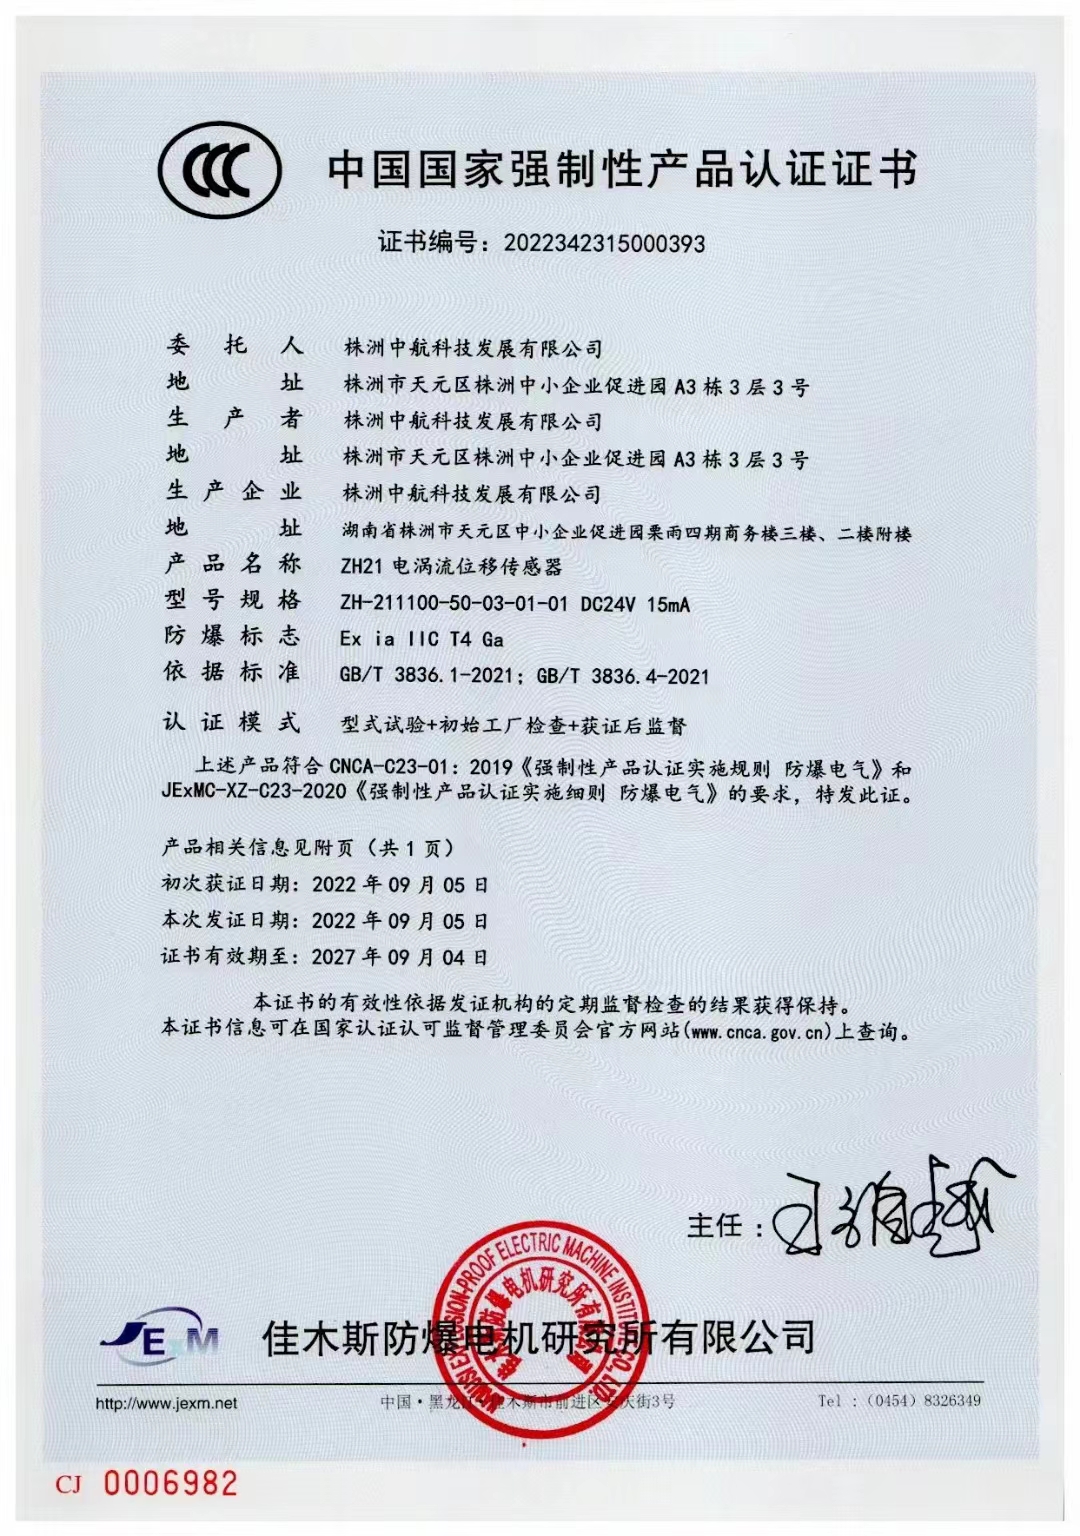 我司順利通過國家強制性產品CCC認證，獲得了《中國國家強制性產品認證證書》